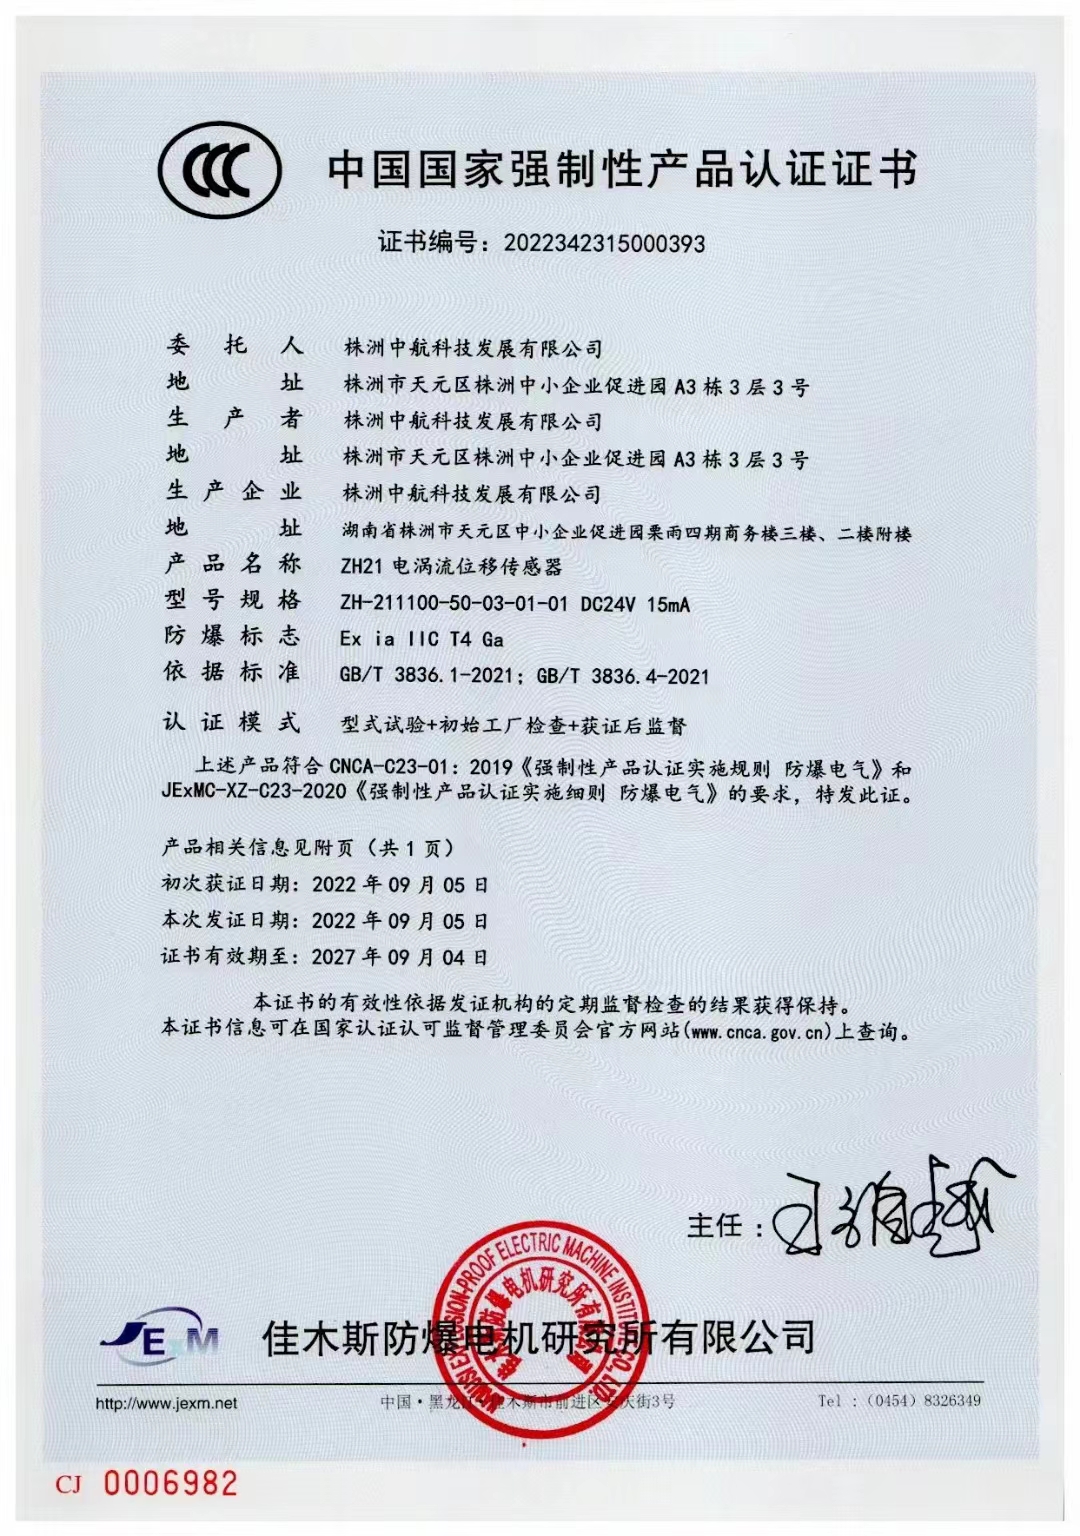 我司順利通過國家強制性產品CCC認證，獲得了《中國國家強制性產品認證證書》